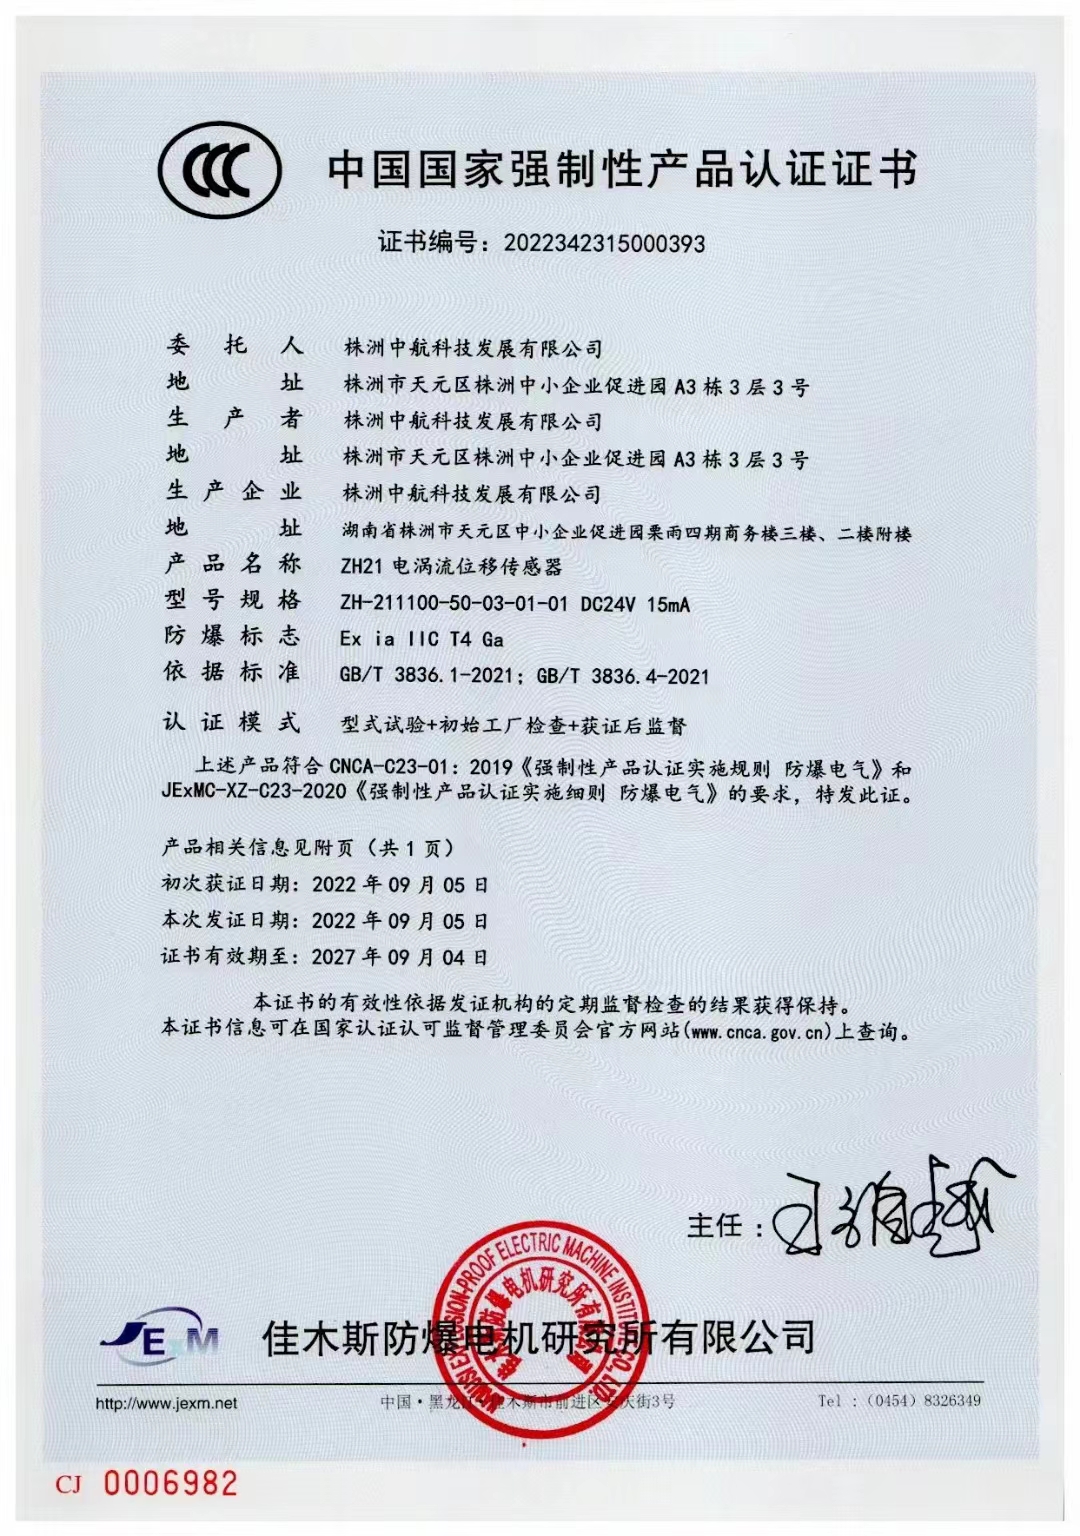 我司順利通過國家強制性產品CCC認證，獲得了《中國國家強制性產品認證證書》